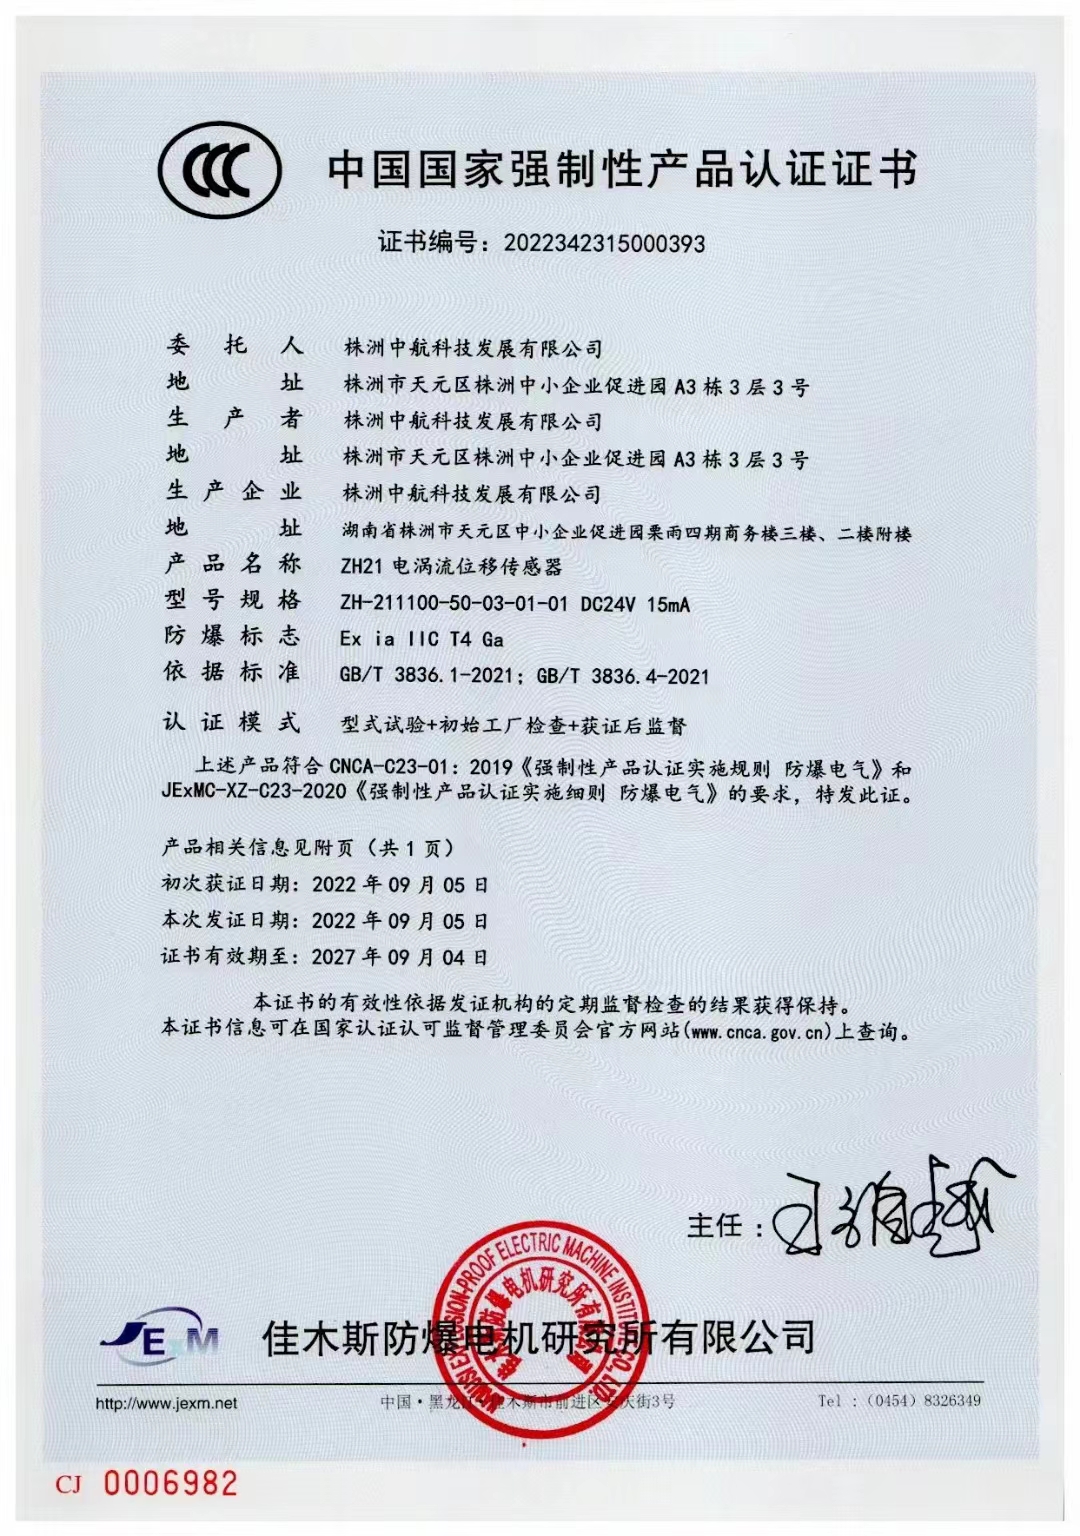 我司順利通過國家強制性產品CCC認證，獲得了《中國國家強制性產品認證證書》